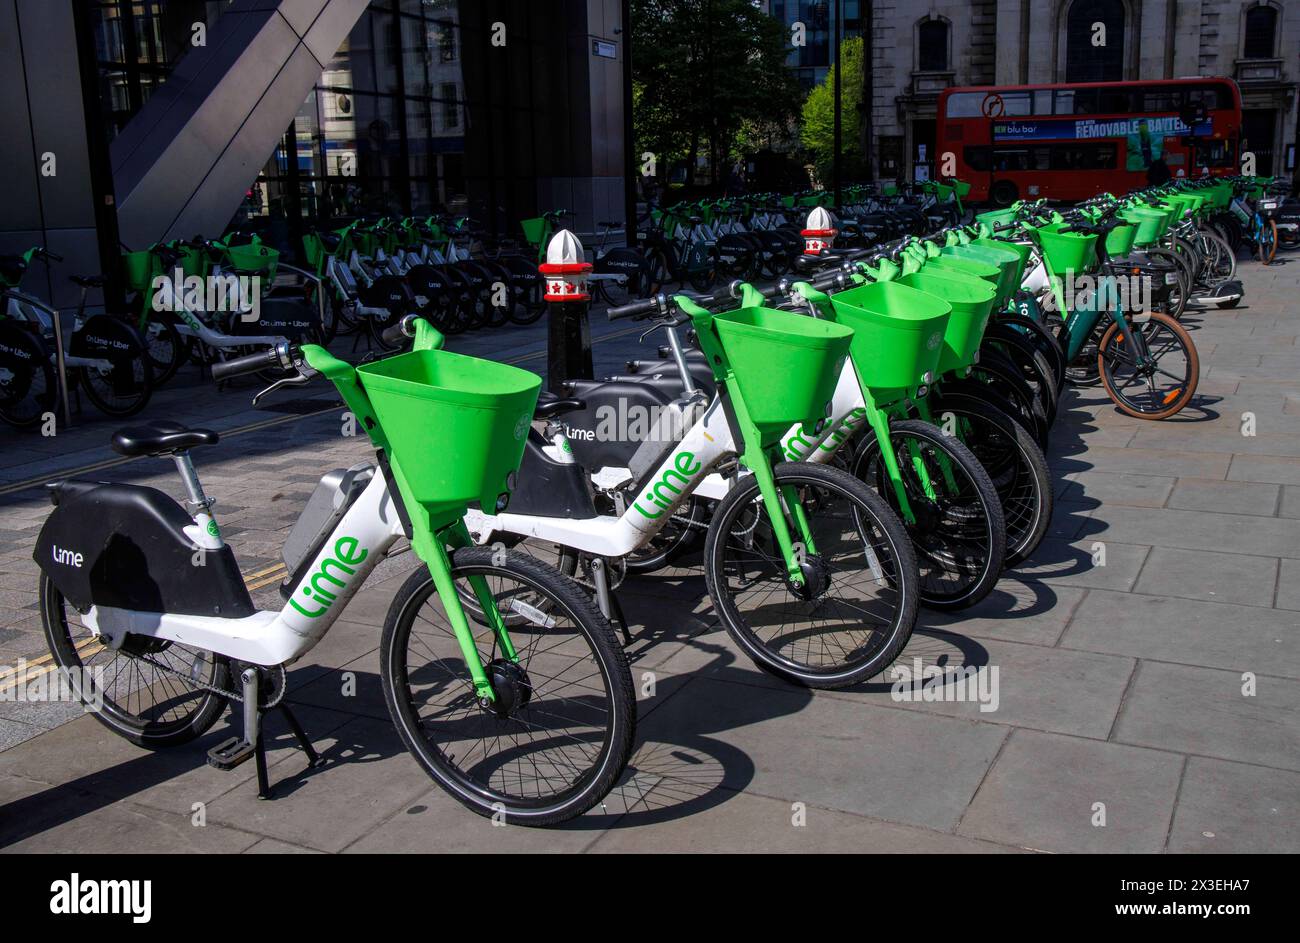 Stazione/hub per biciclette lime a Londra. Fondata a San Francisco nel 2017, ci sono circa 30.000 biciclette a noleggio attualmente stimate nelle strade di Londra. Foto Stock